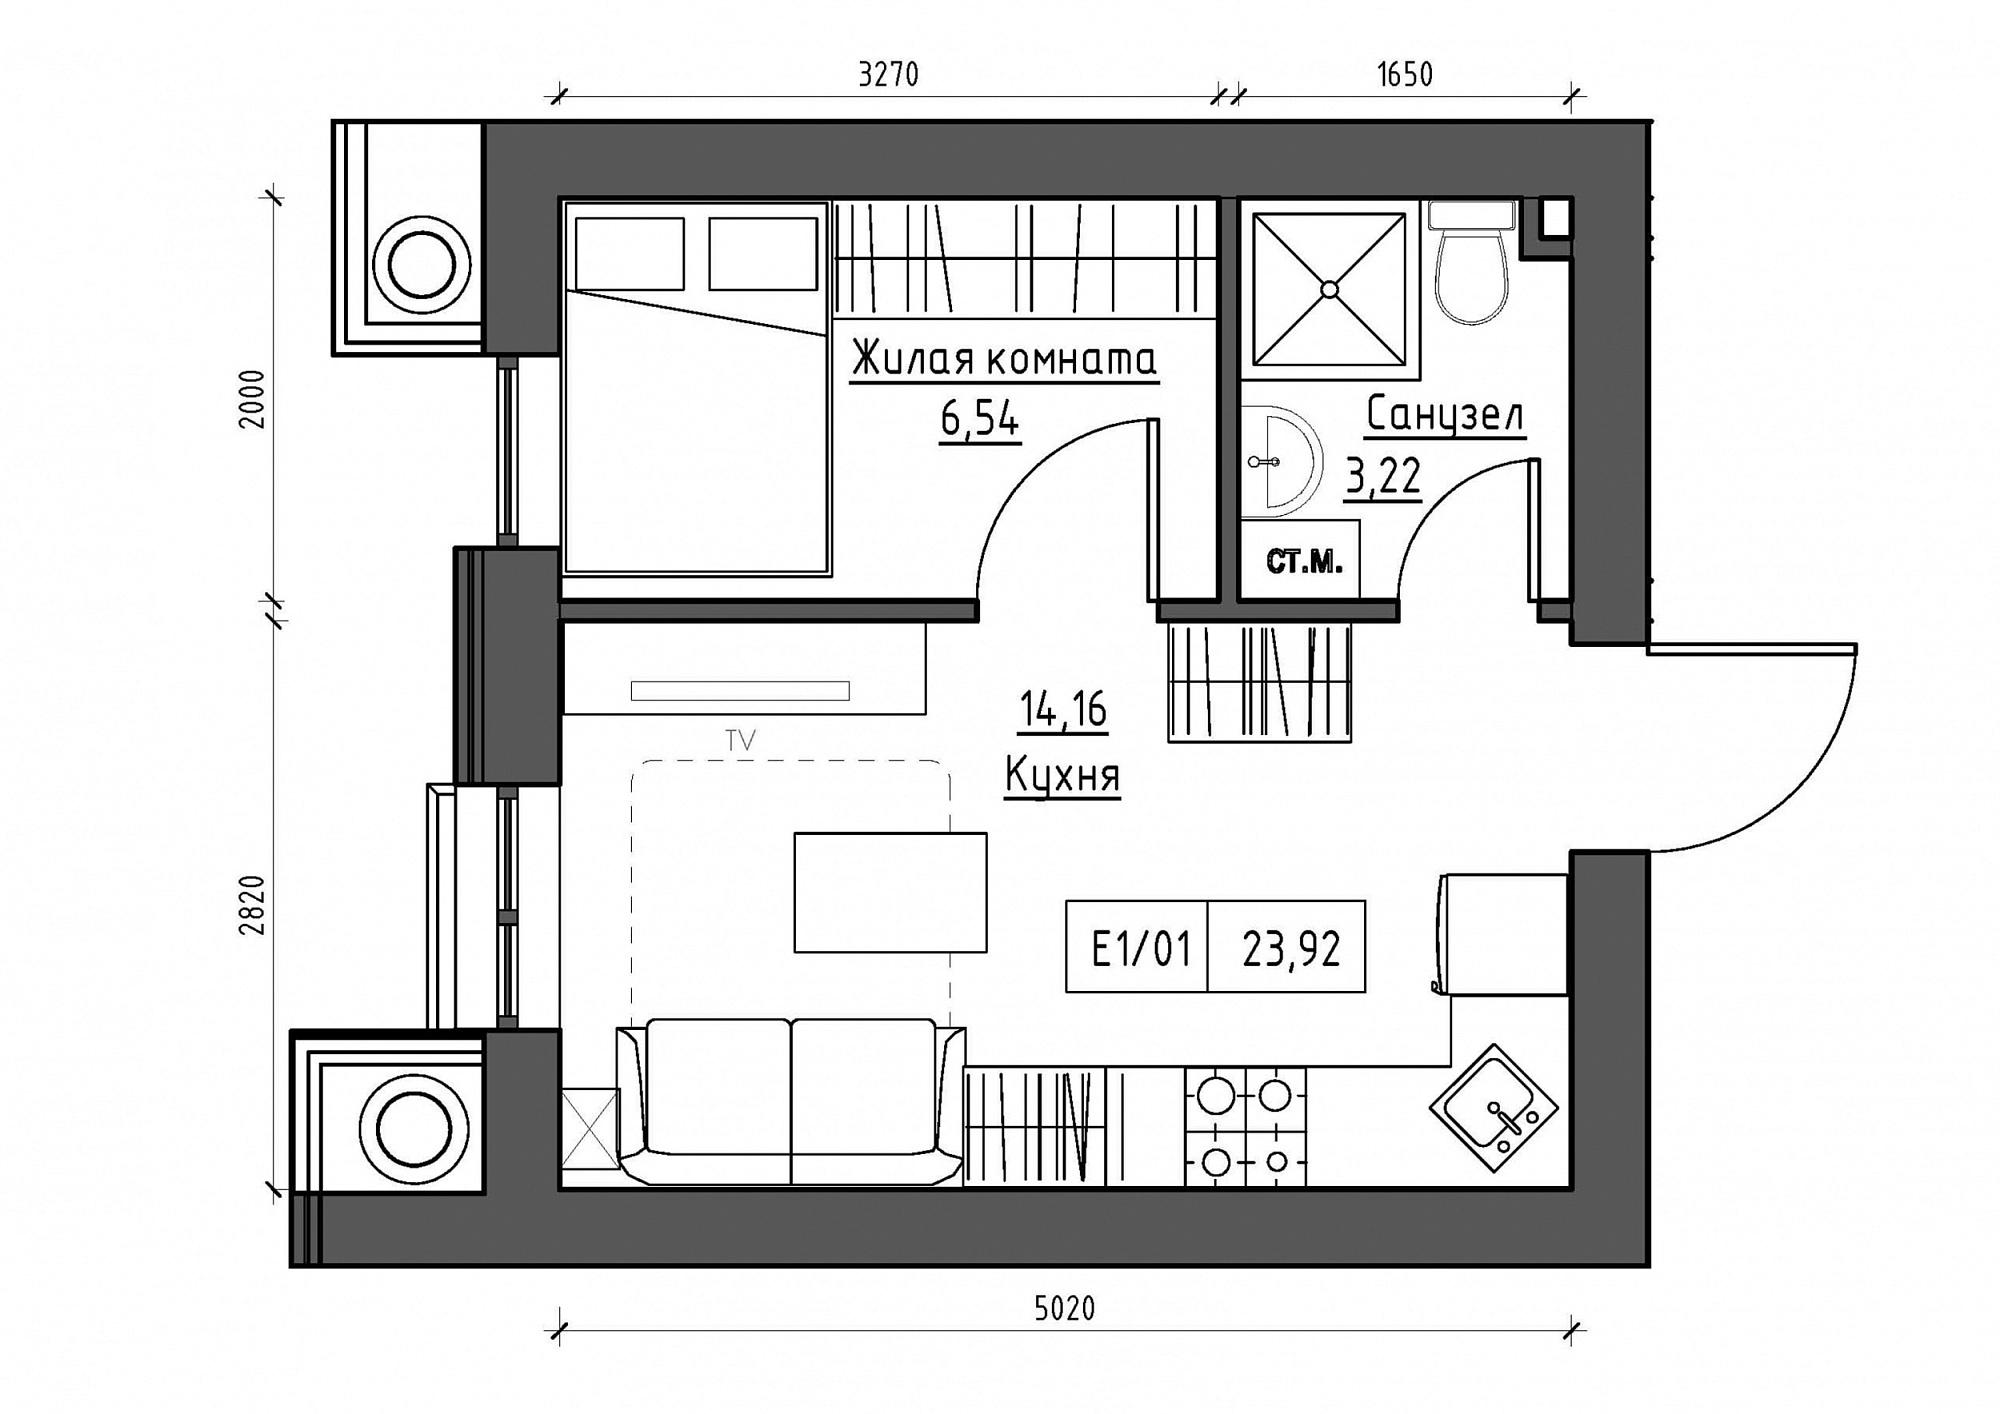 Планування 1-к квартира площею 23.92м2, KS-012-05/0015.